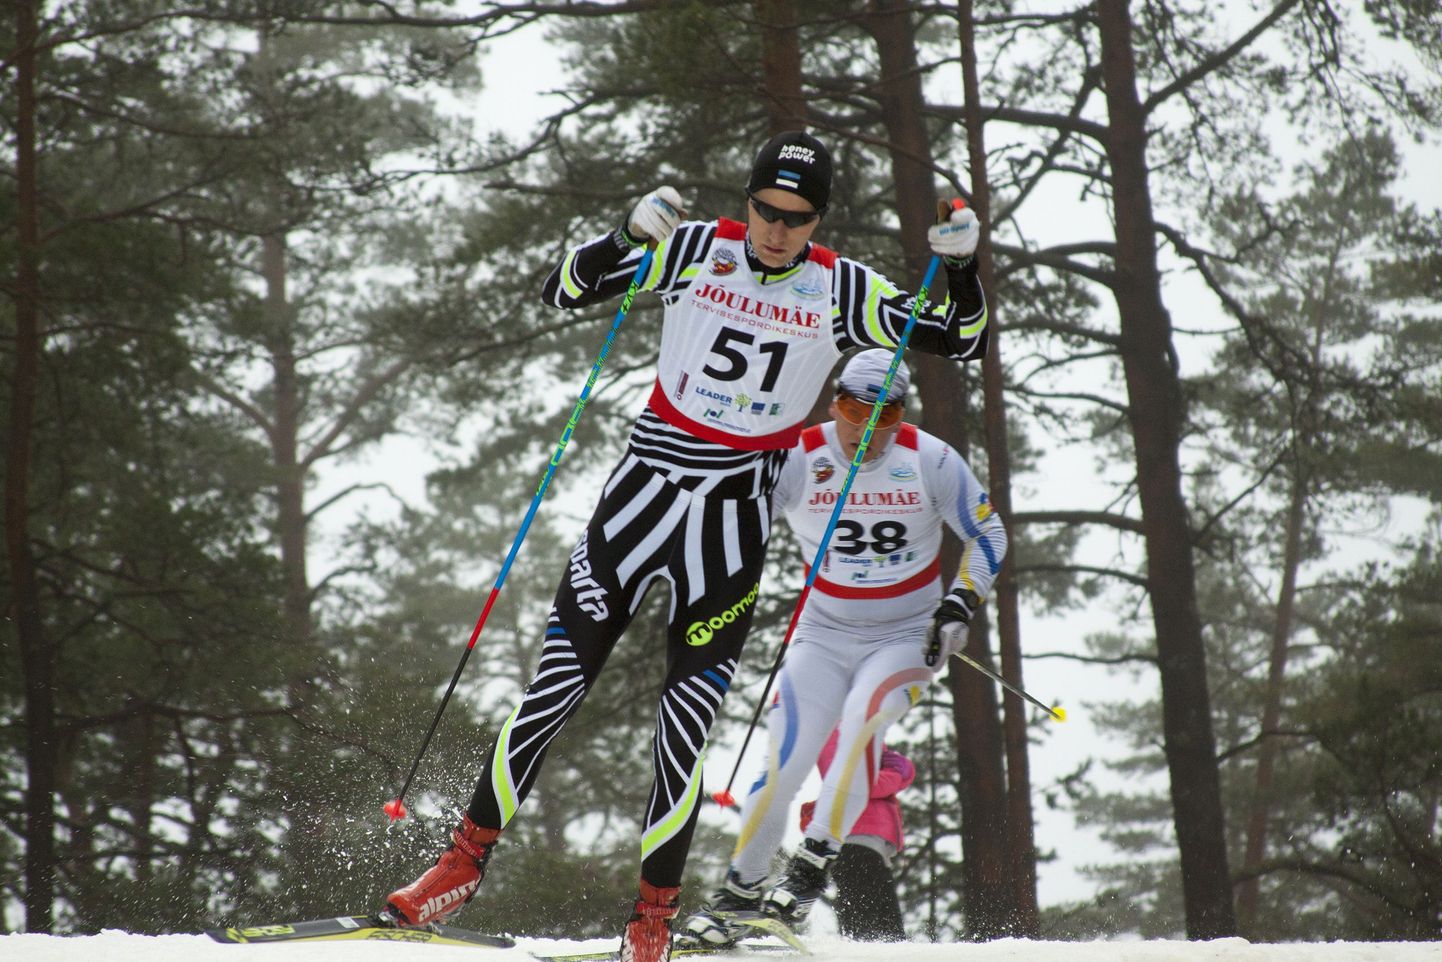 60 startinu seas võitis Jõulumäe kunstlumeringil peetud suusamaratoni Martti Hinna (nr51).